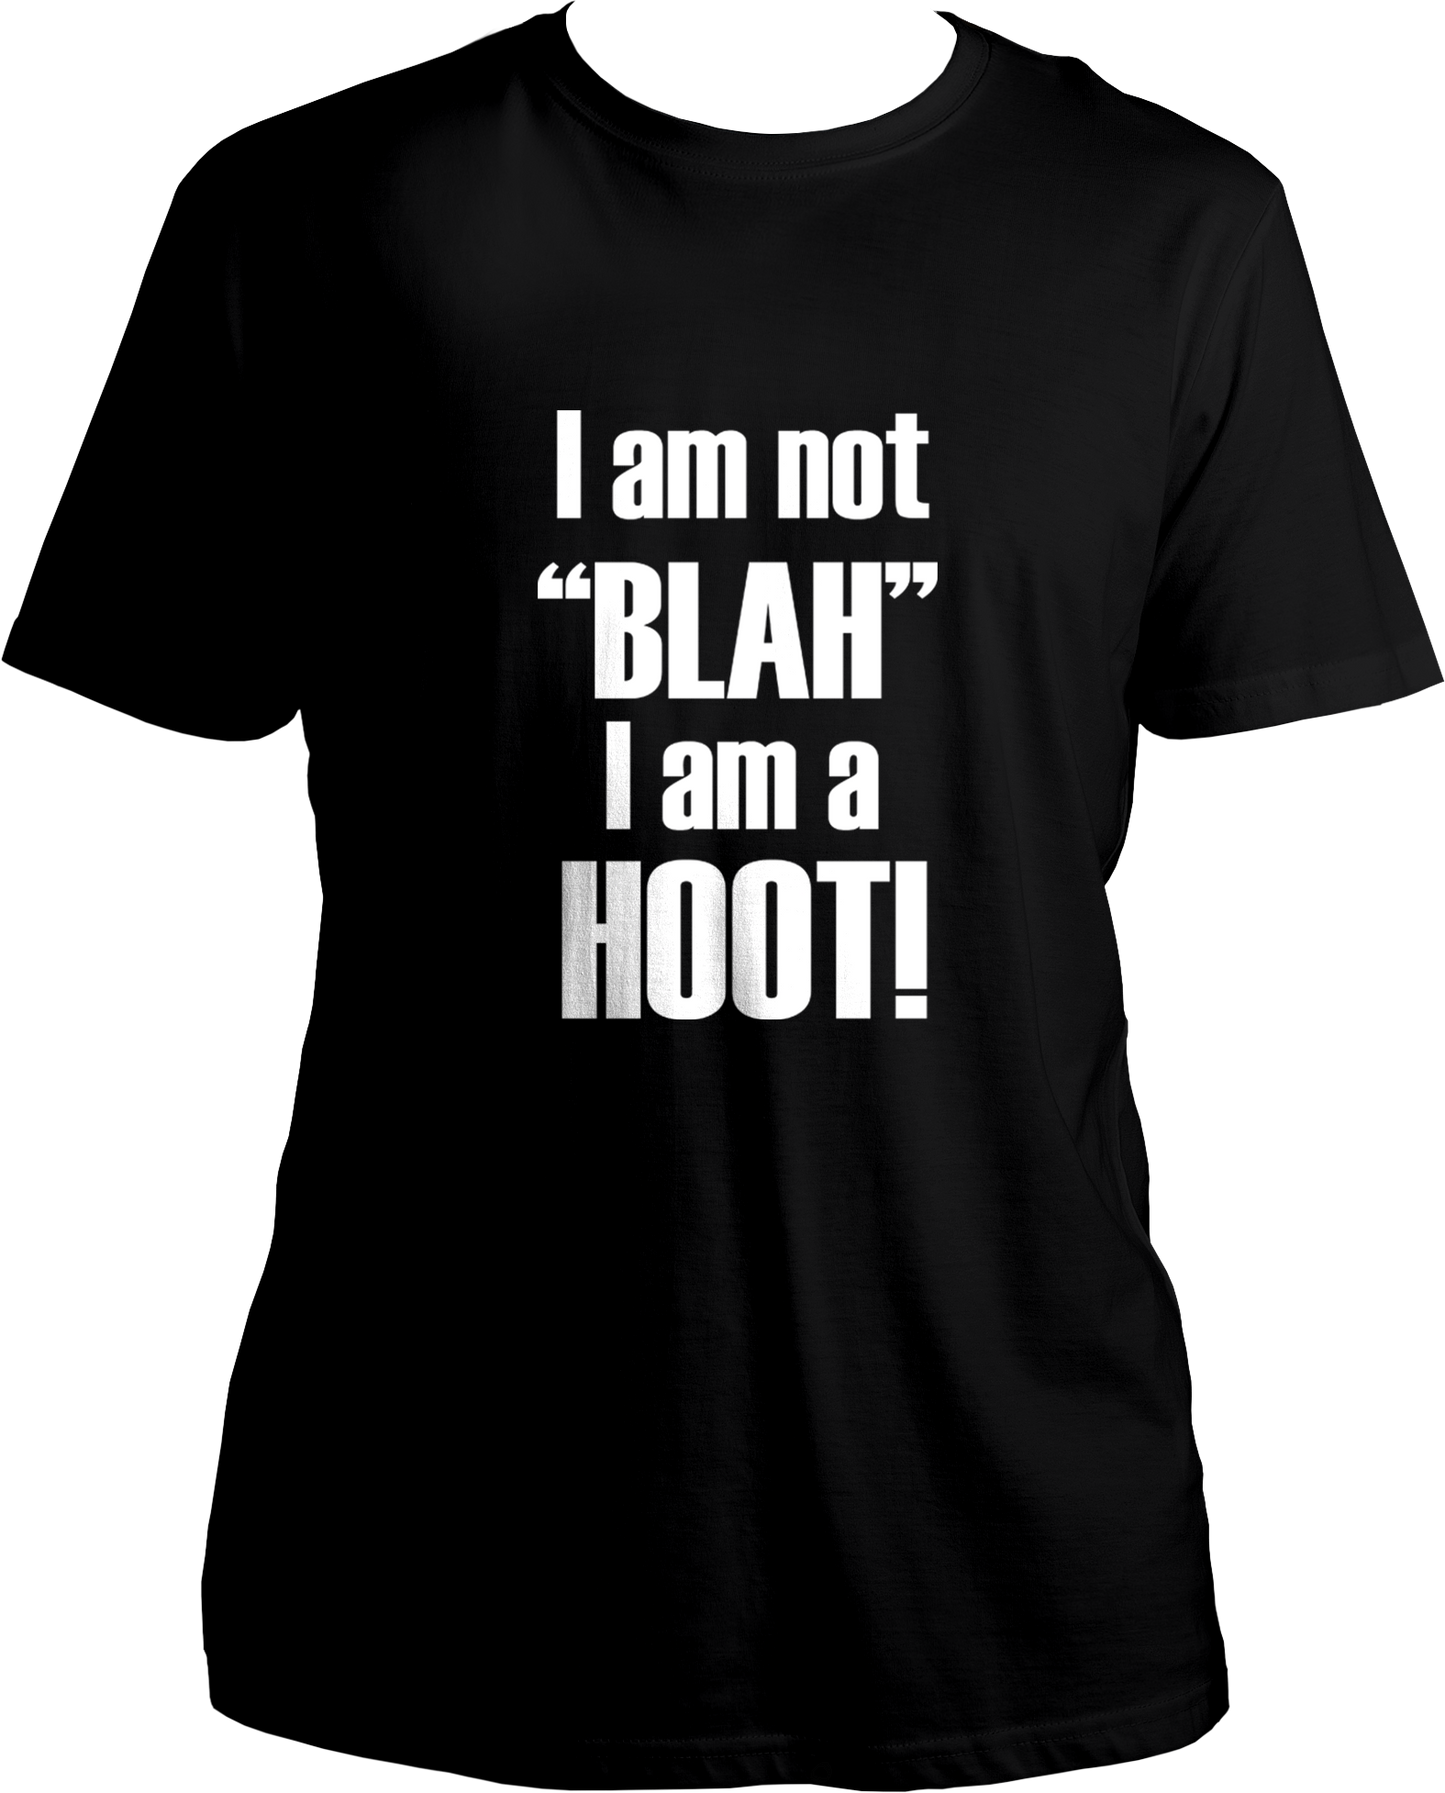 I Am Not "Blah" I Am A Hoot